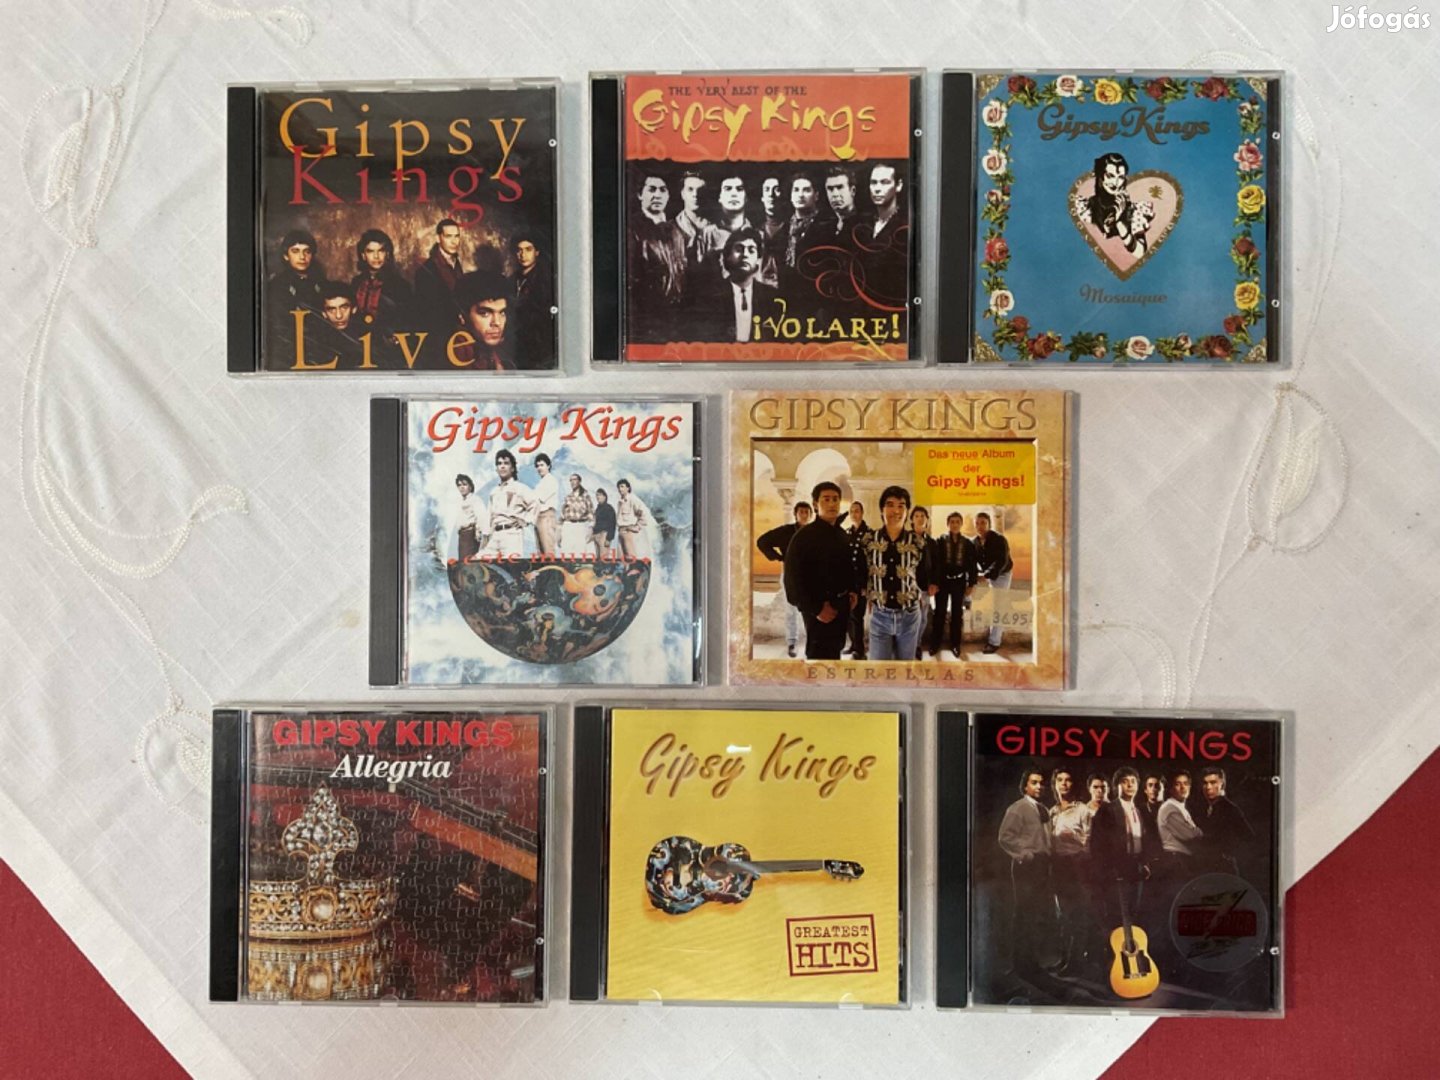 Gipsy Kings CD lemezek szép állapotban eladók